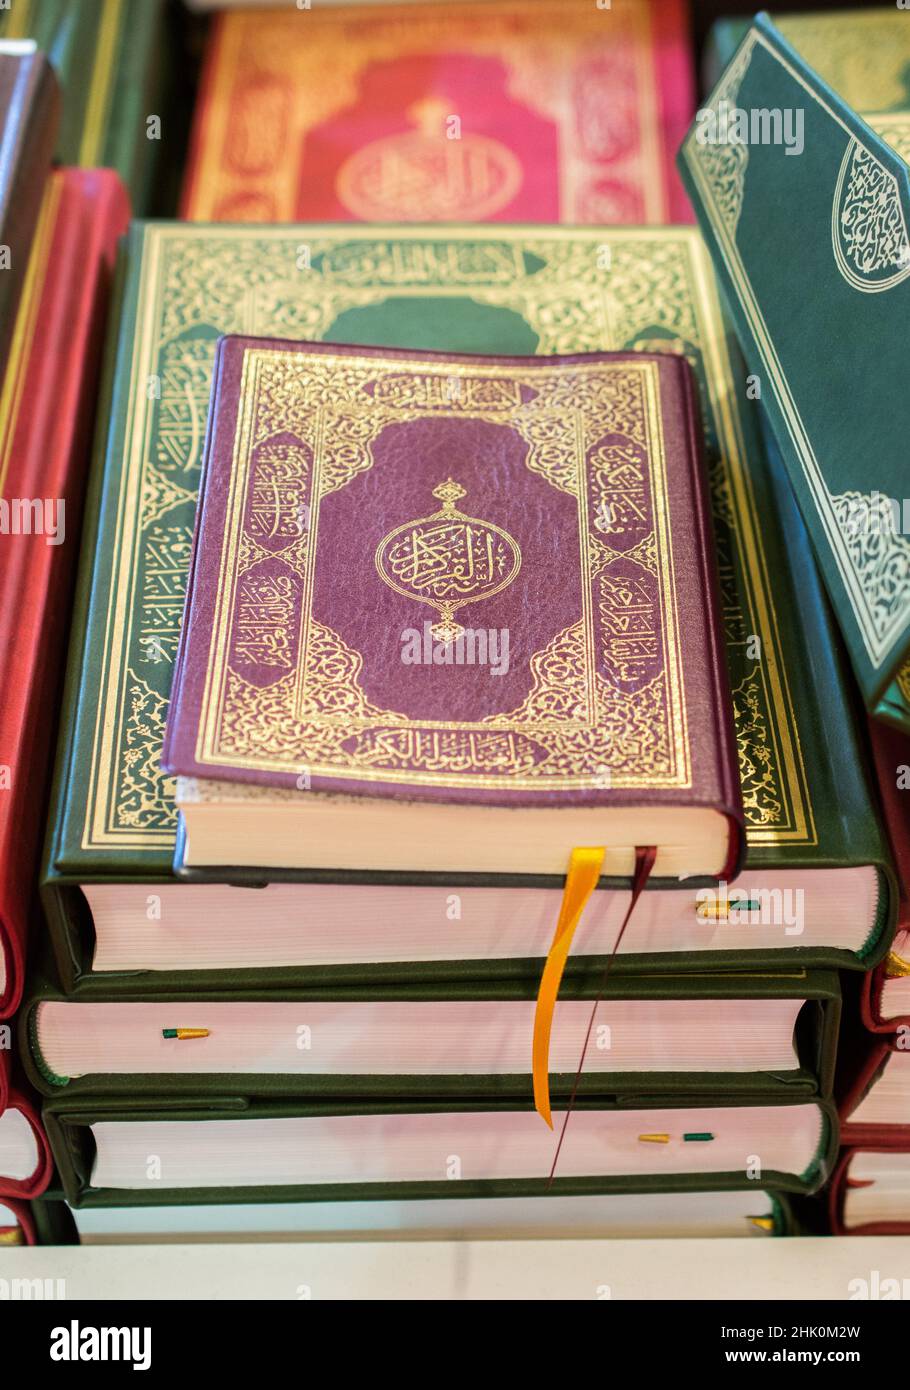 Livre Sacré Des Musulmans Dans Le Coran, Un Livre Ouvert Sur Un